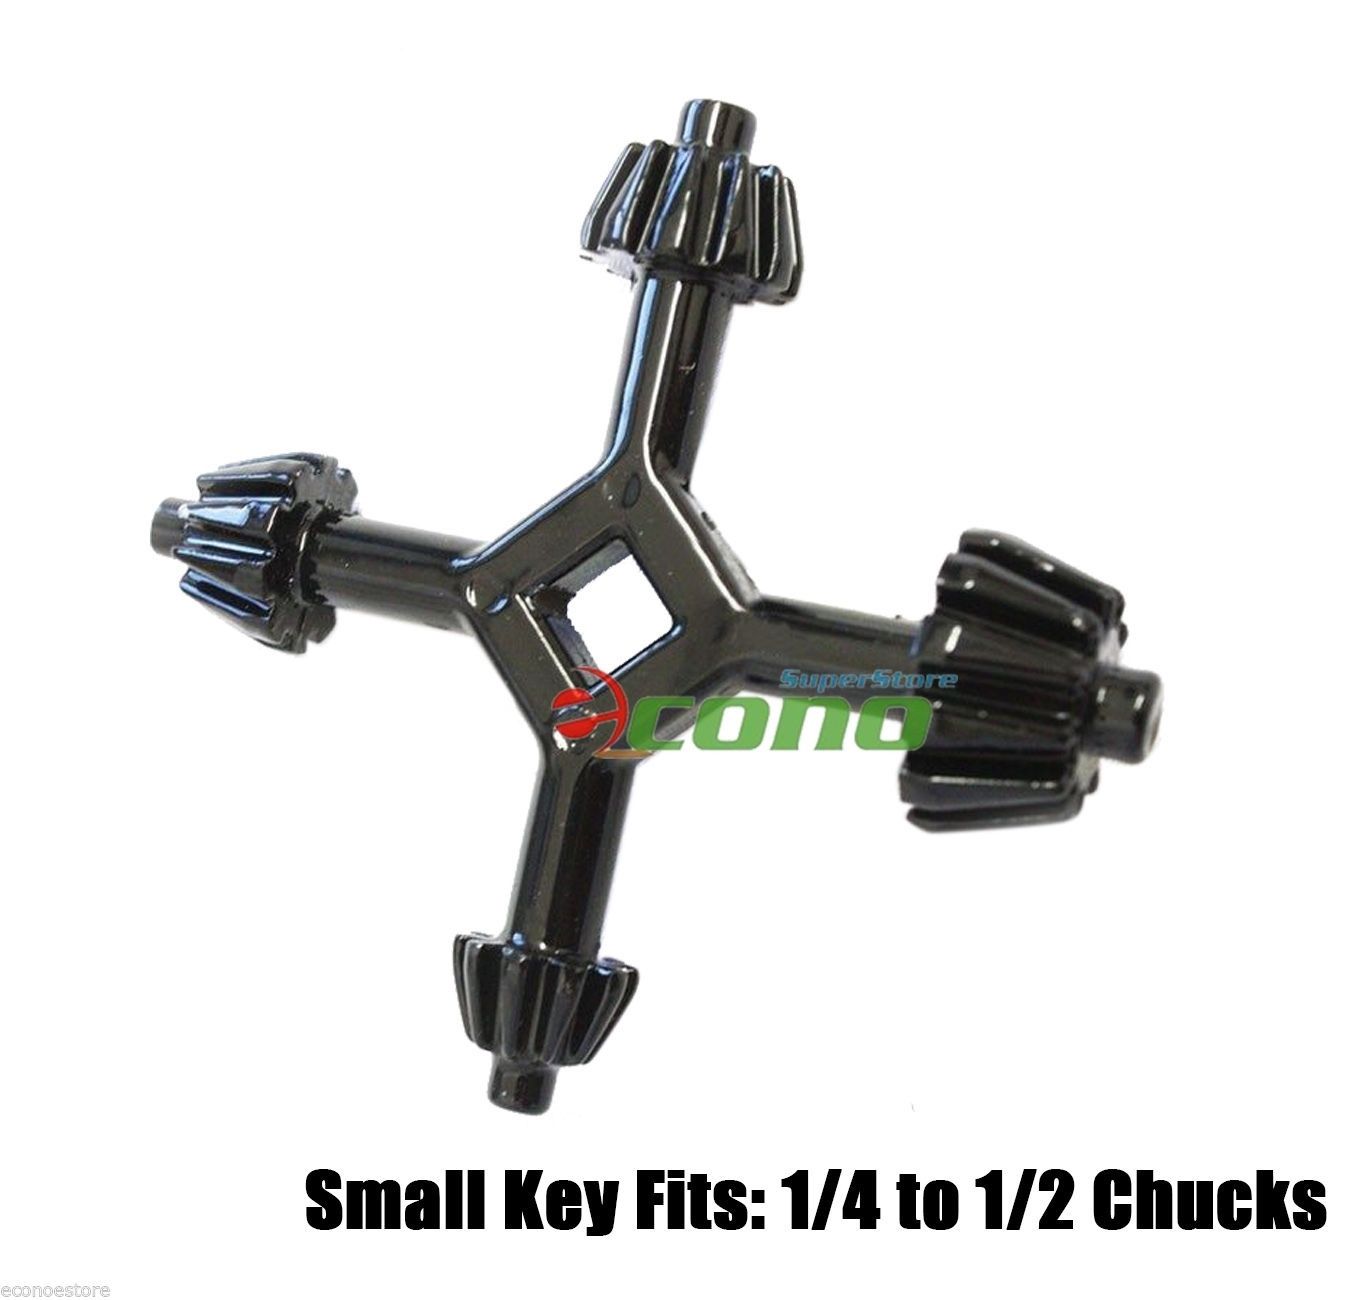 4-Way Universal Chuck Key Fits Most Drills